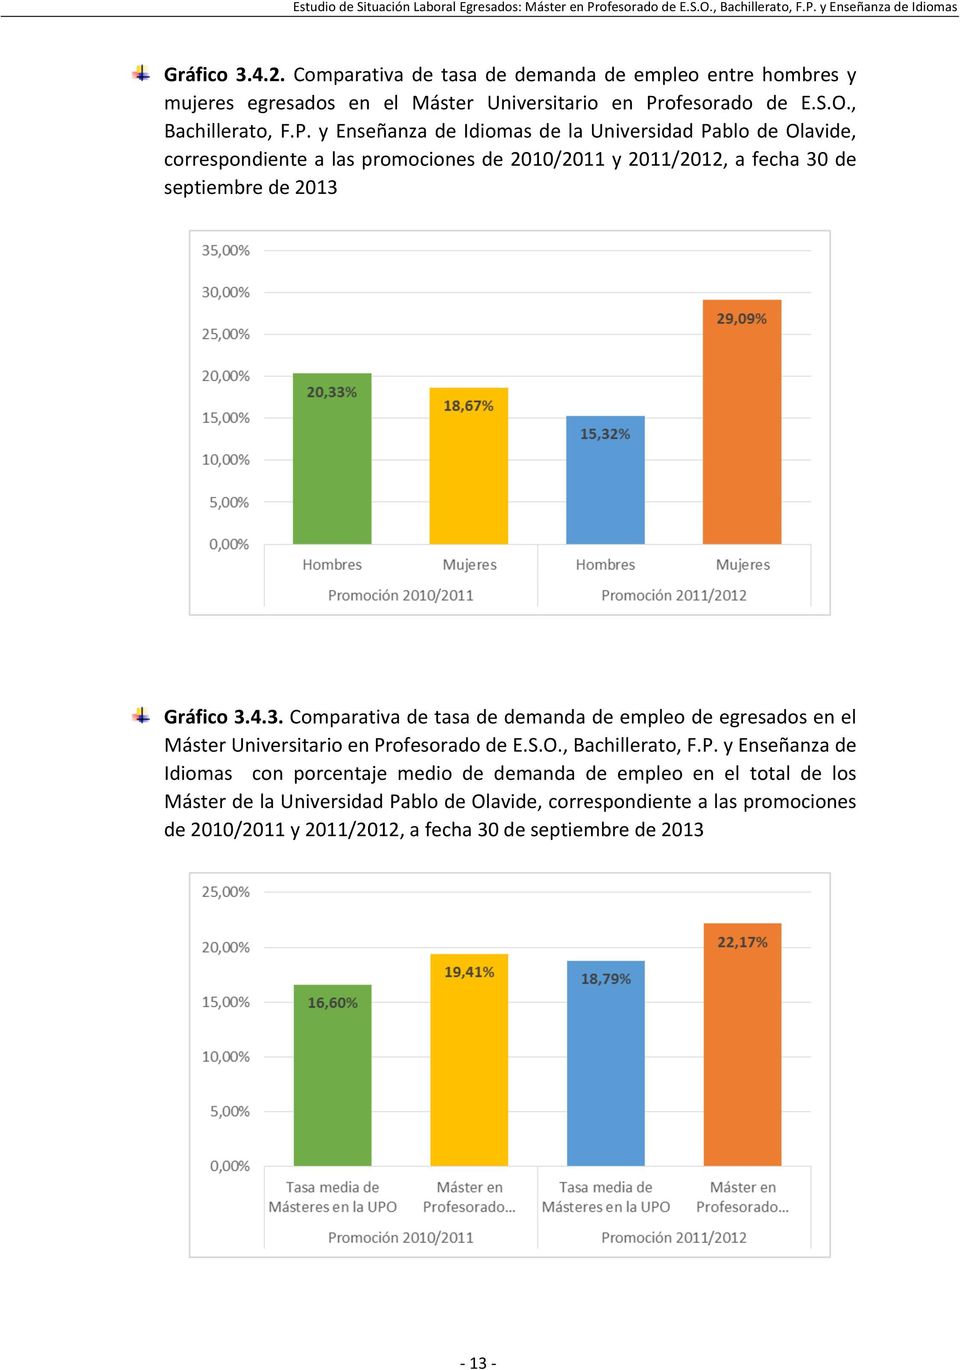 y Enseñanza de Idiomas de la Universidad Pablo de Olavide, correspondiente a las promociones de 2010/2011 y 2011/2012, a fecha 30